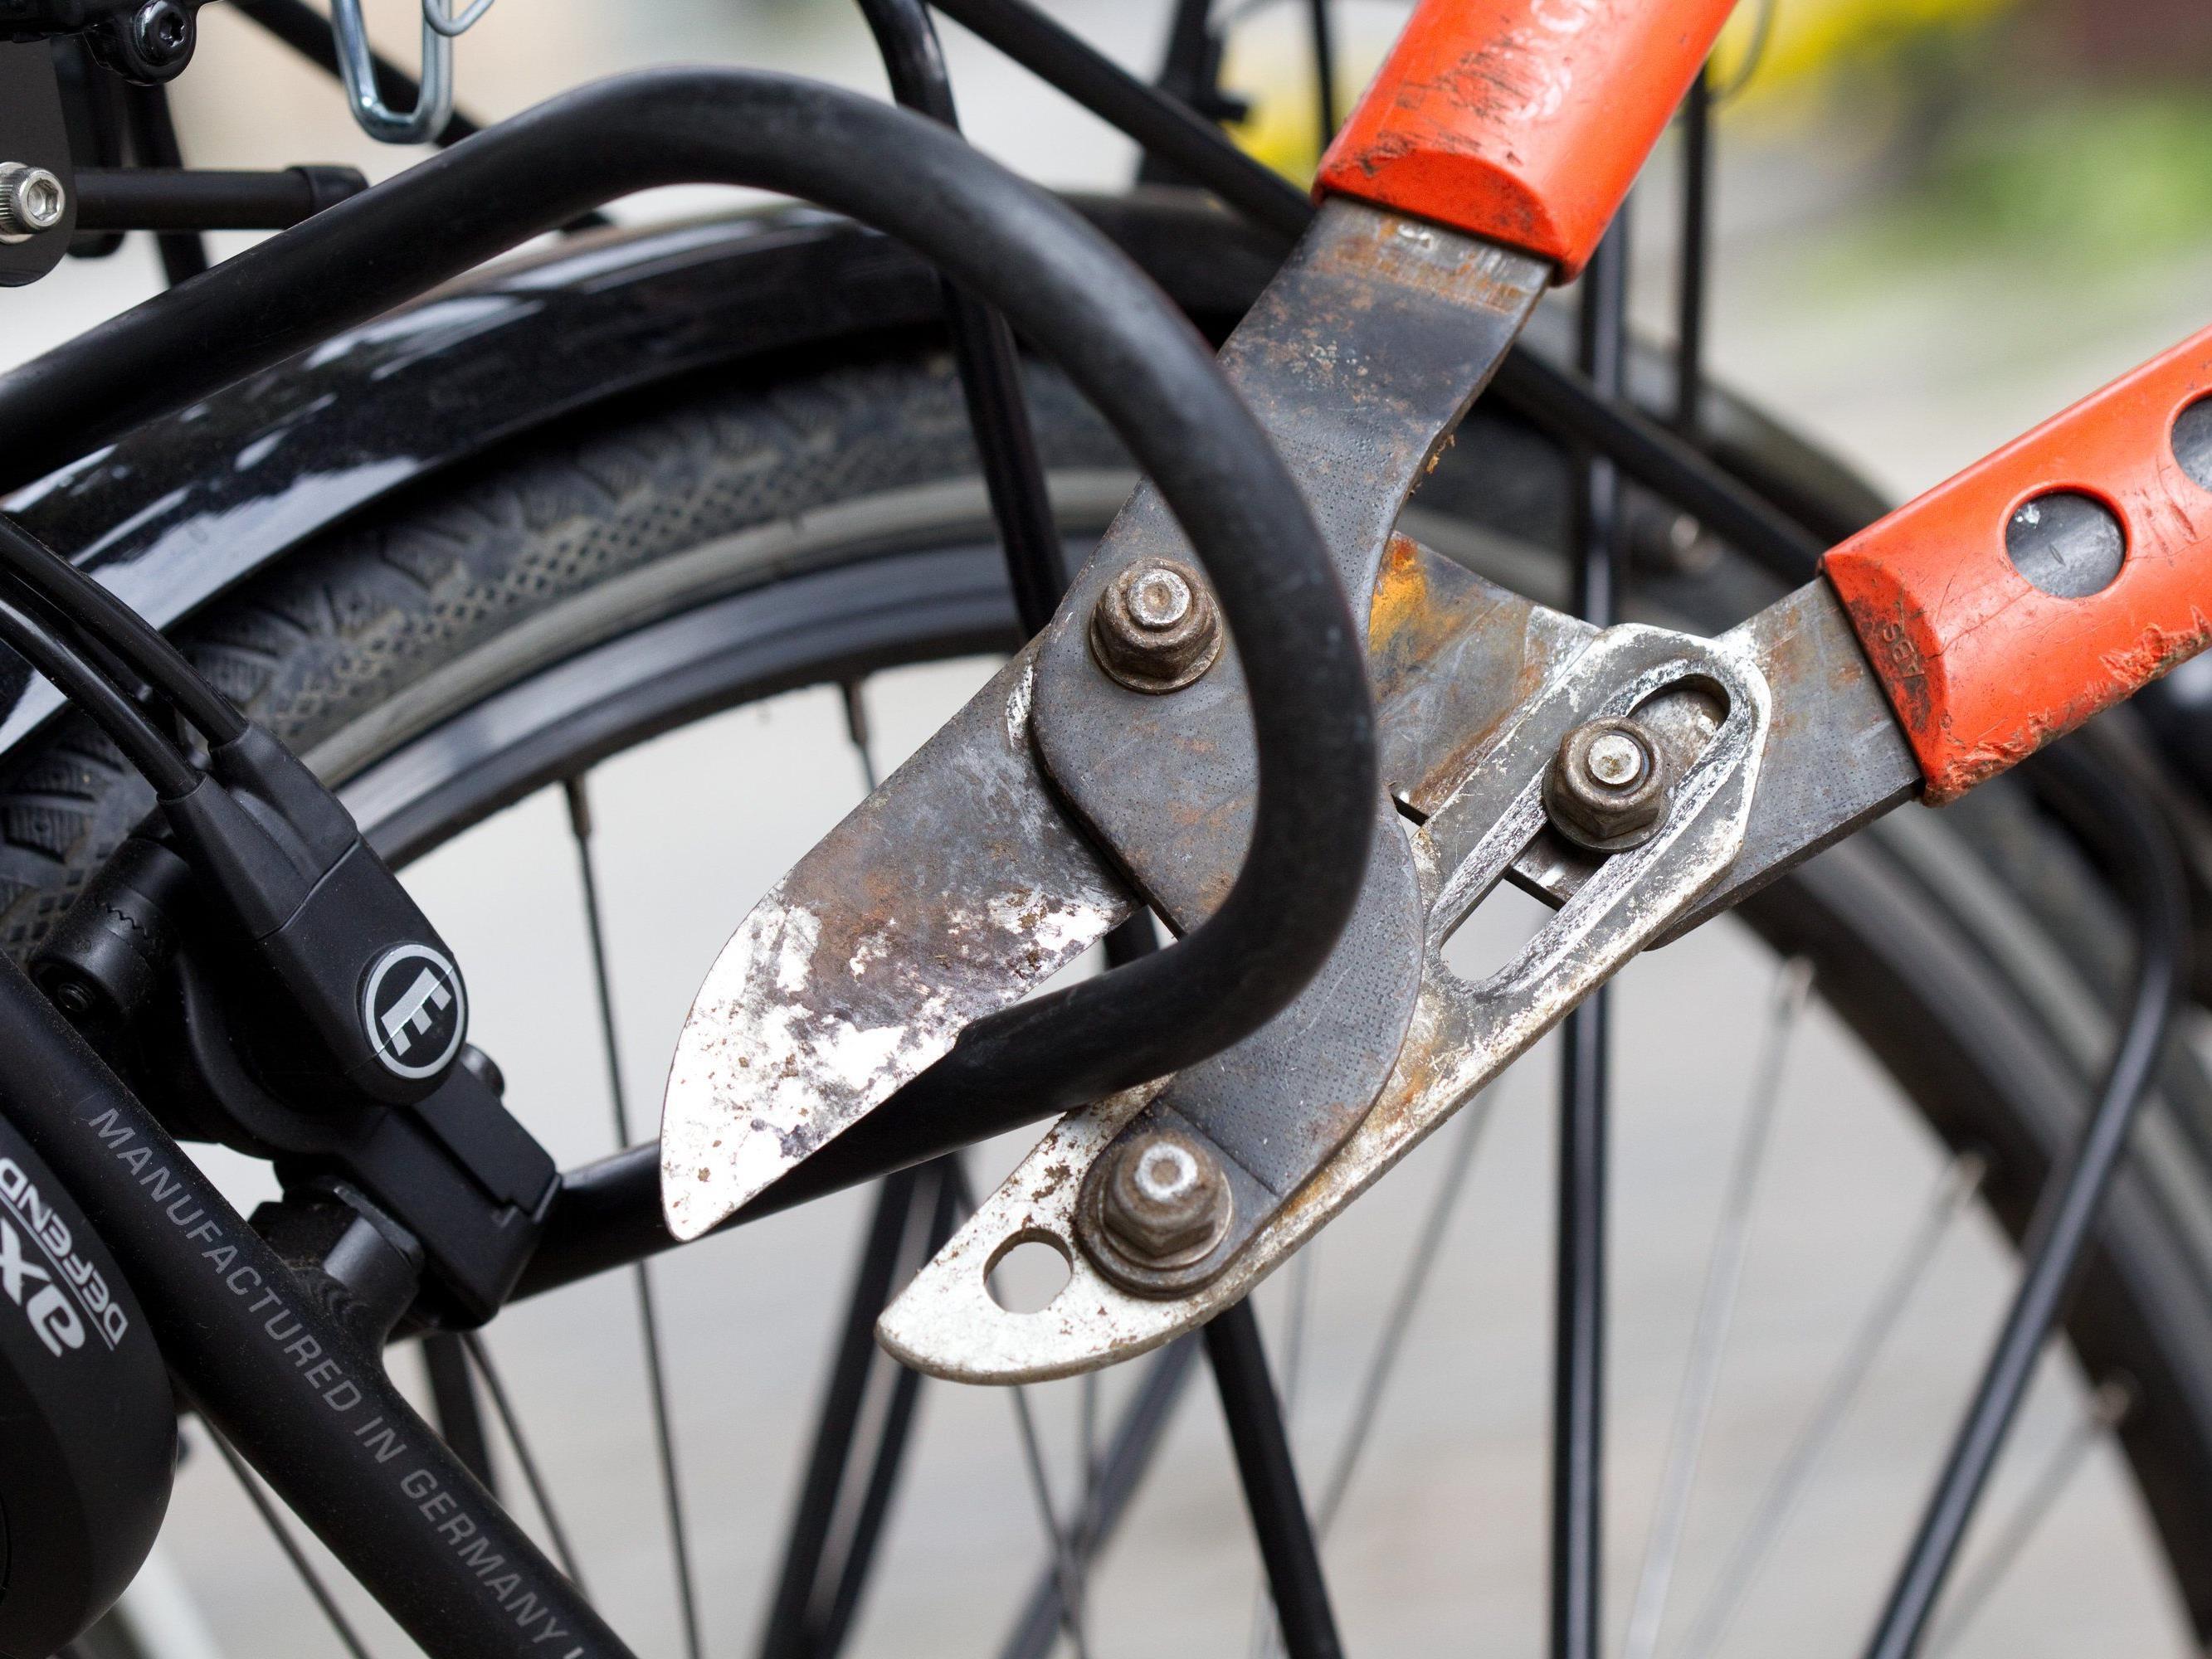 Am Samstag wurden drei mutmaßlcihe Fahrraddiebe in Wien festgenommen.